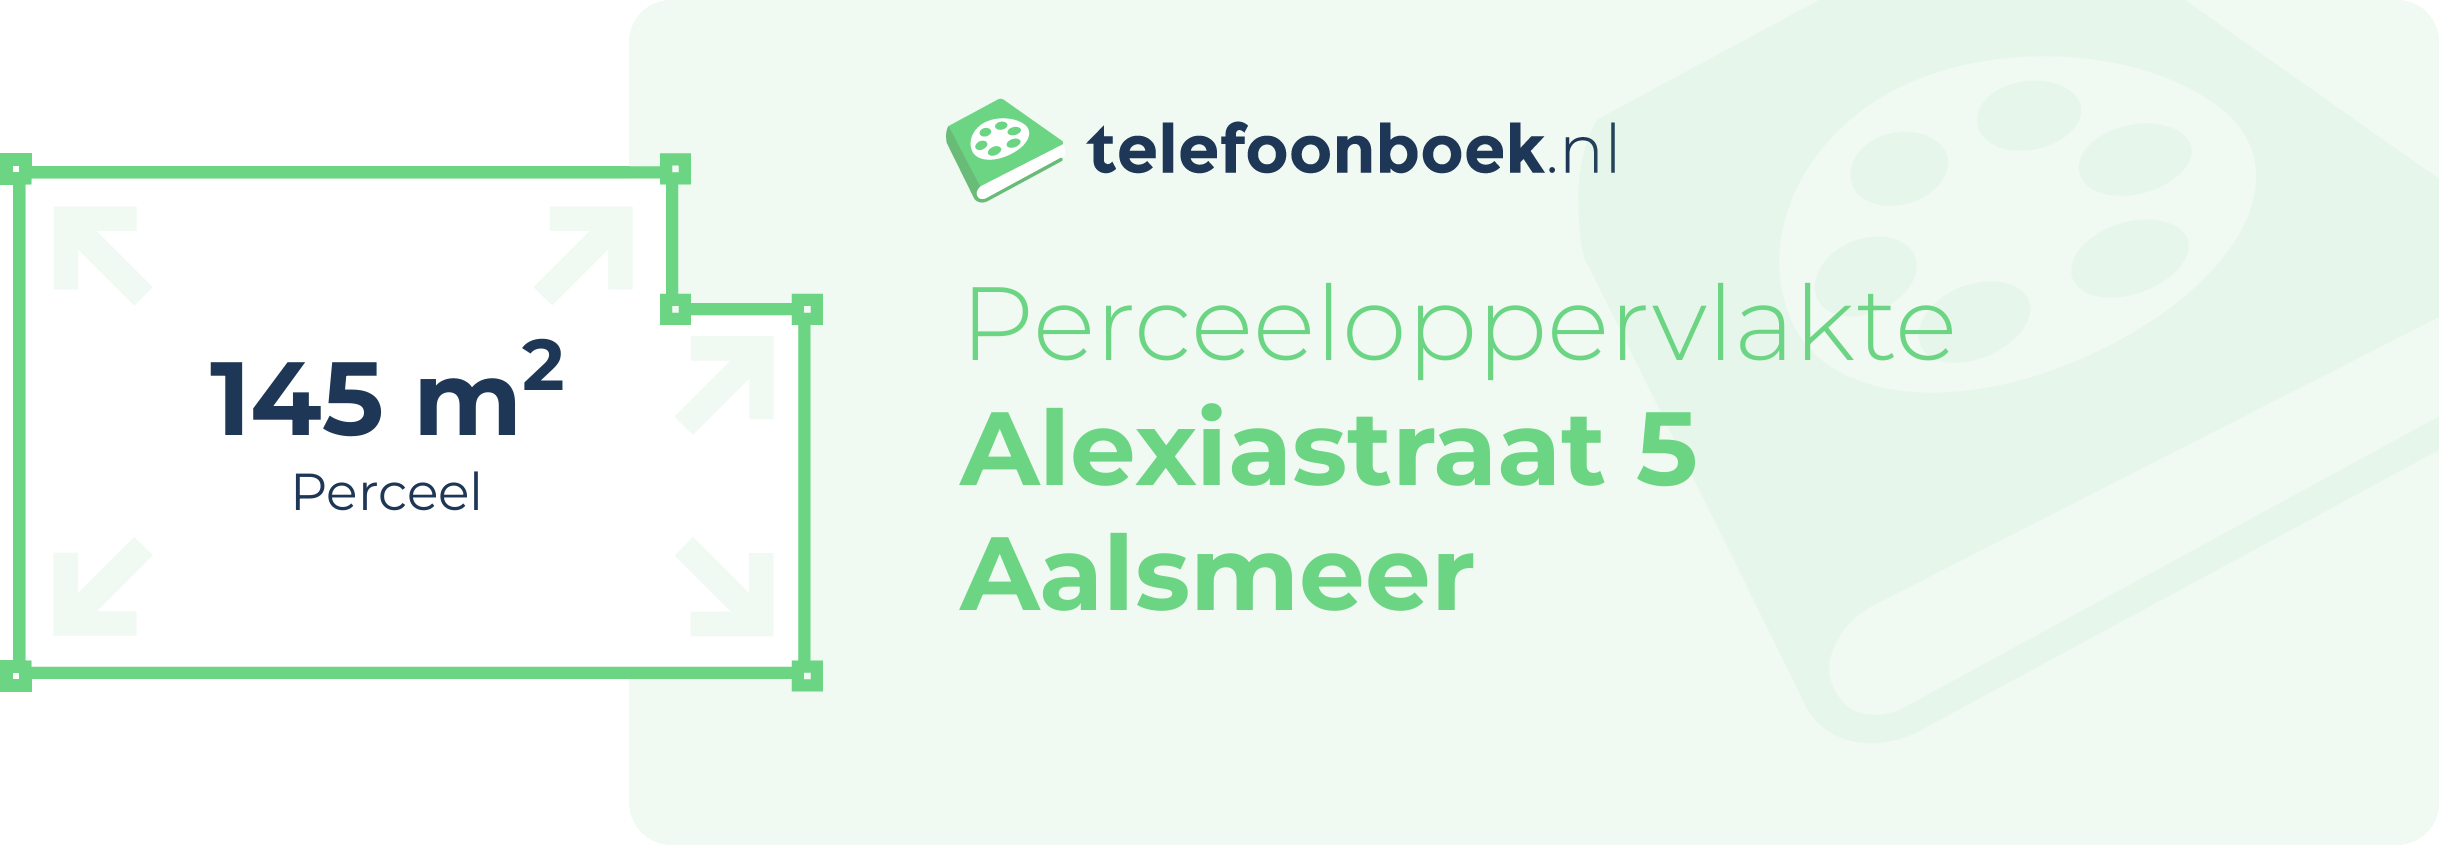 Perceeloppervlakte Alexiastraat 5 Aalsmeer